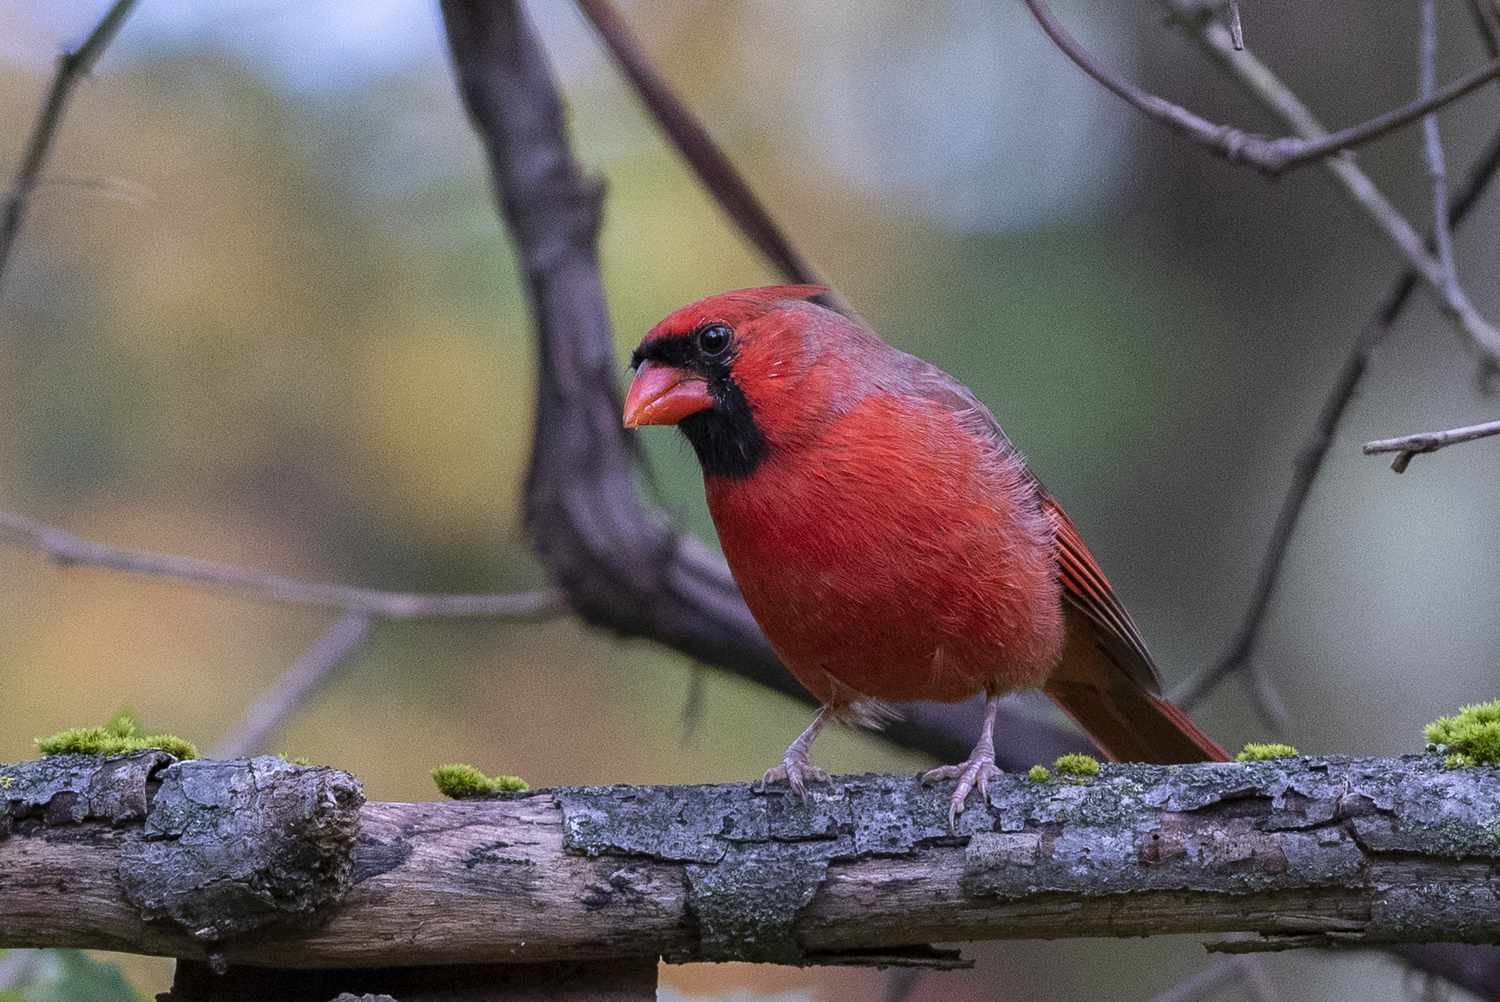 Oiseaux rouges : Photos de 12 oiseaux rouges du monde entier